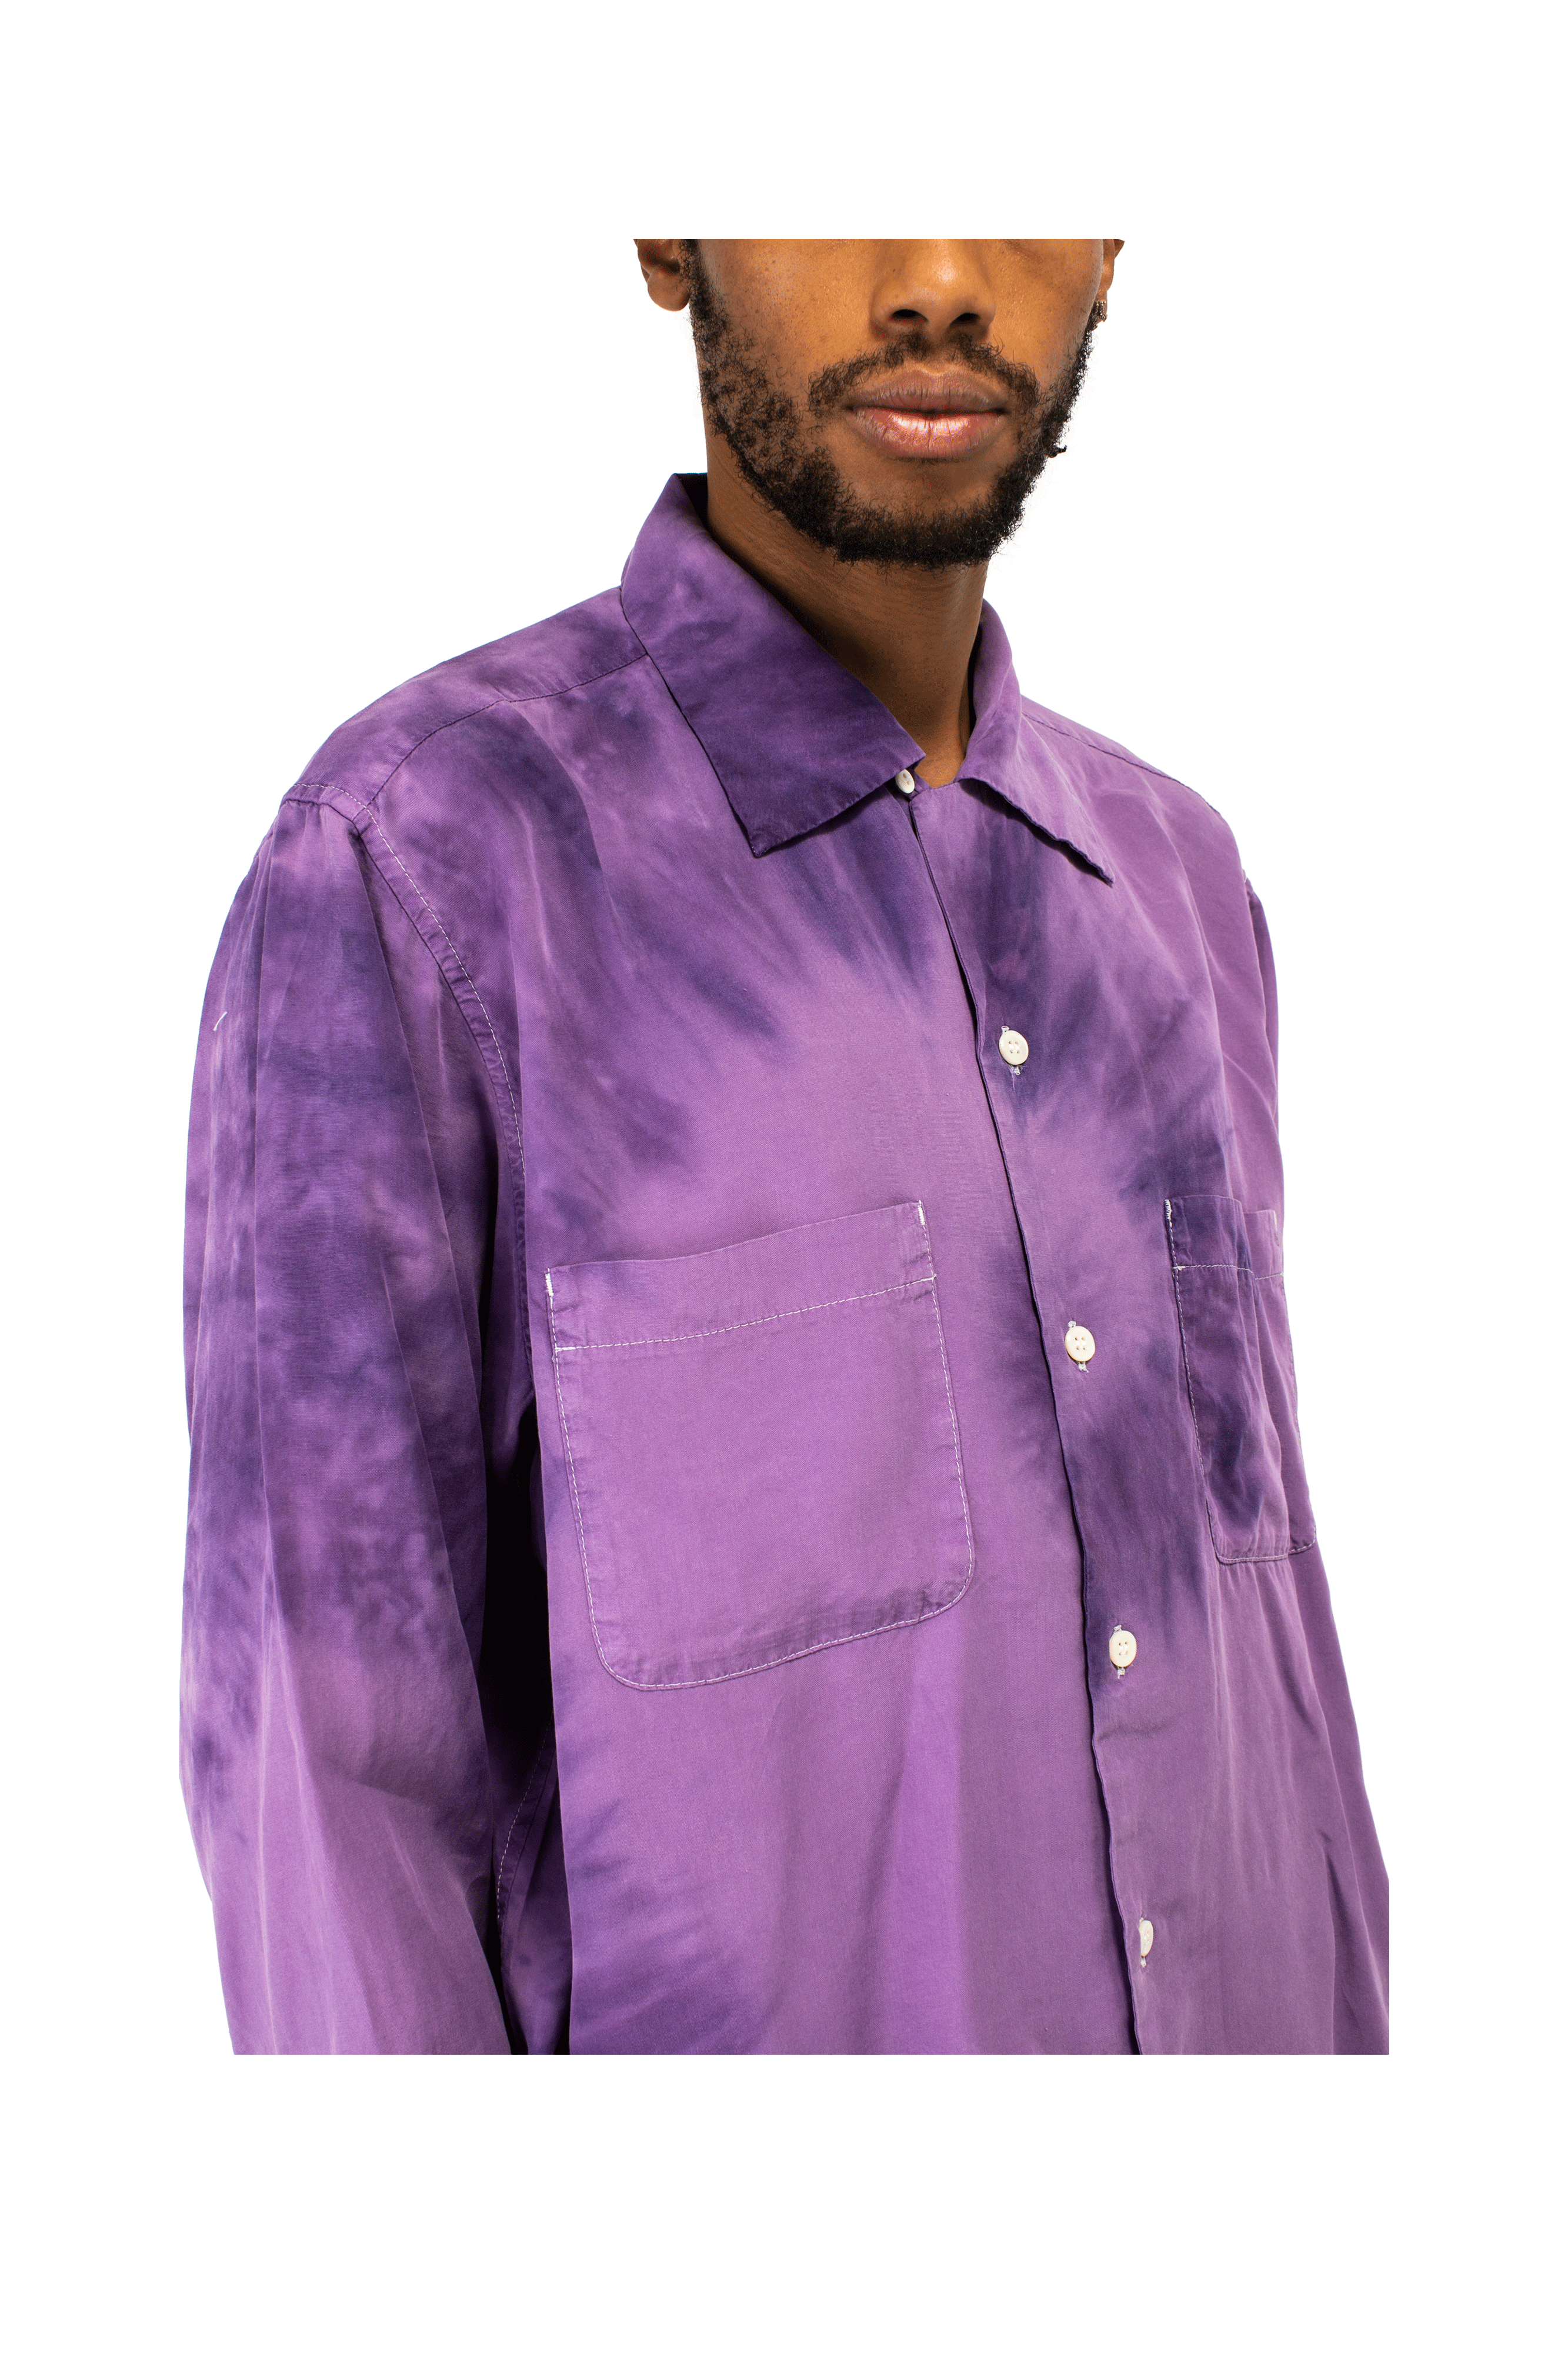 Hand Dyed Open Collar Shirt